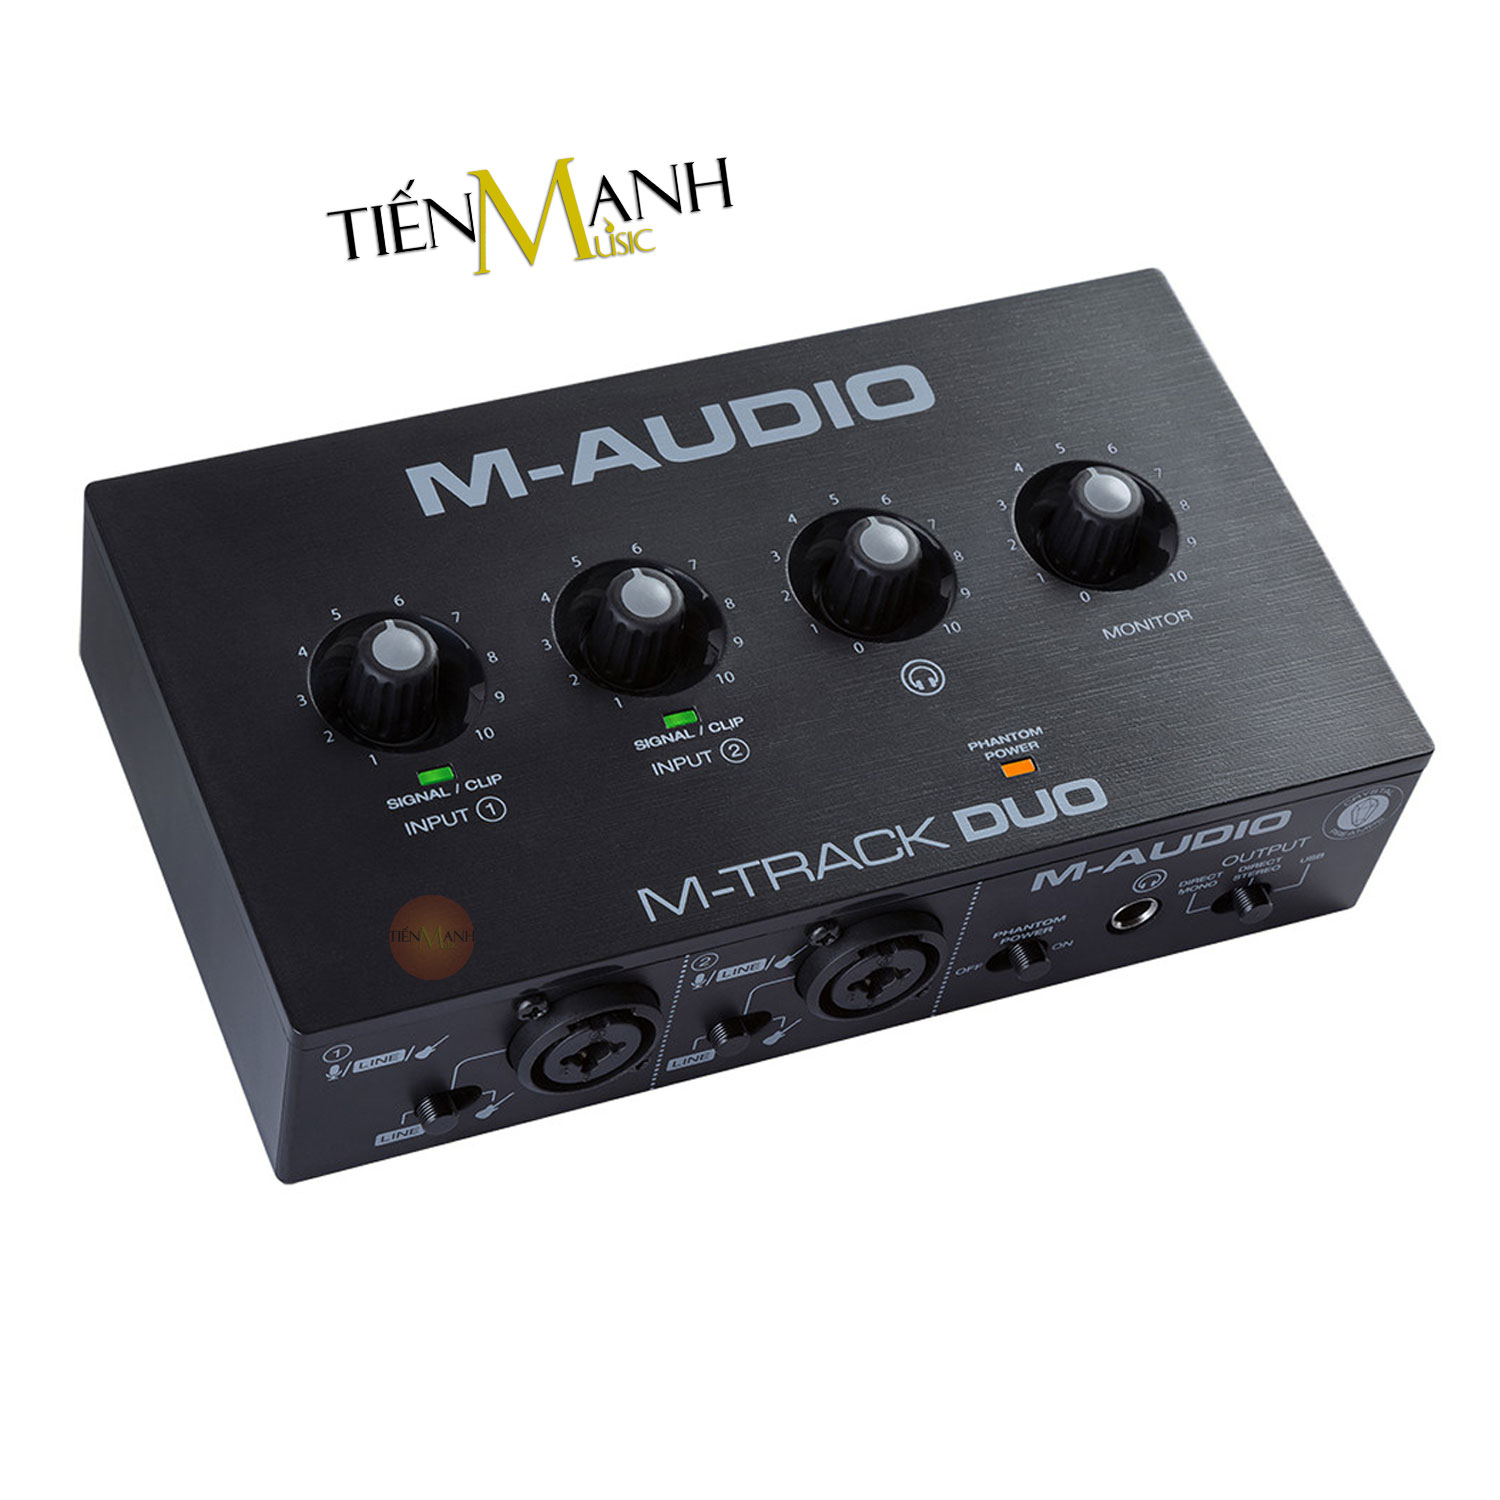 Soundcard M-Audio M-Track Duo - Bộ Thu Âm Thanh Và Livestream MAudio MTrack Audio Interface Sound Card M Track Hàng Chính Hãng - Kèm Móng Gẩy DreamMaker